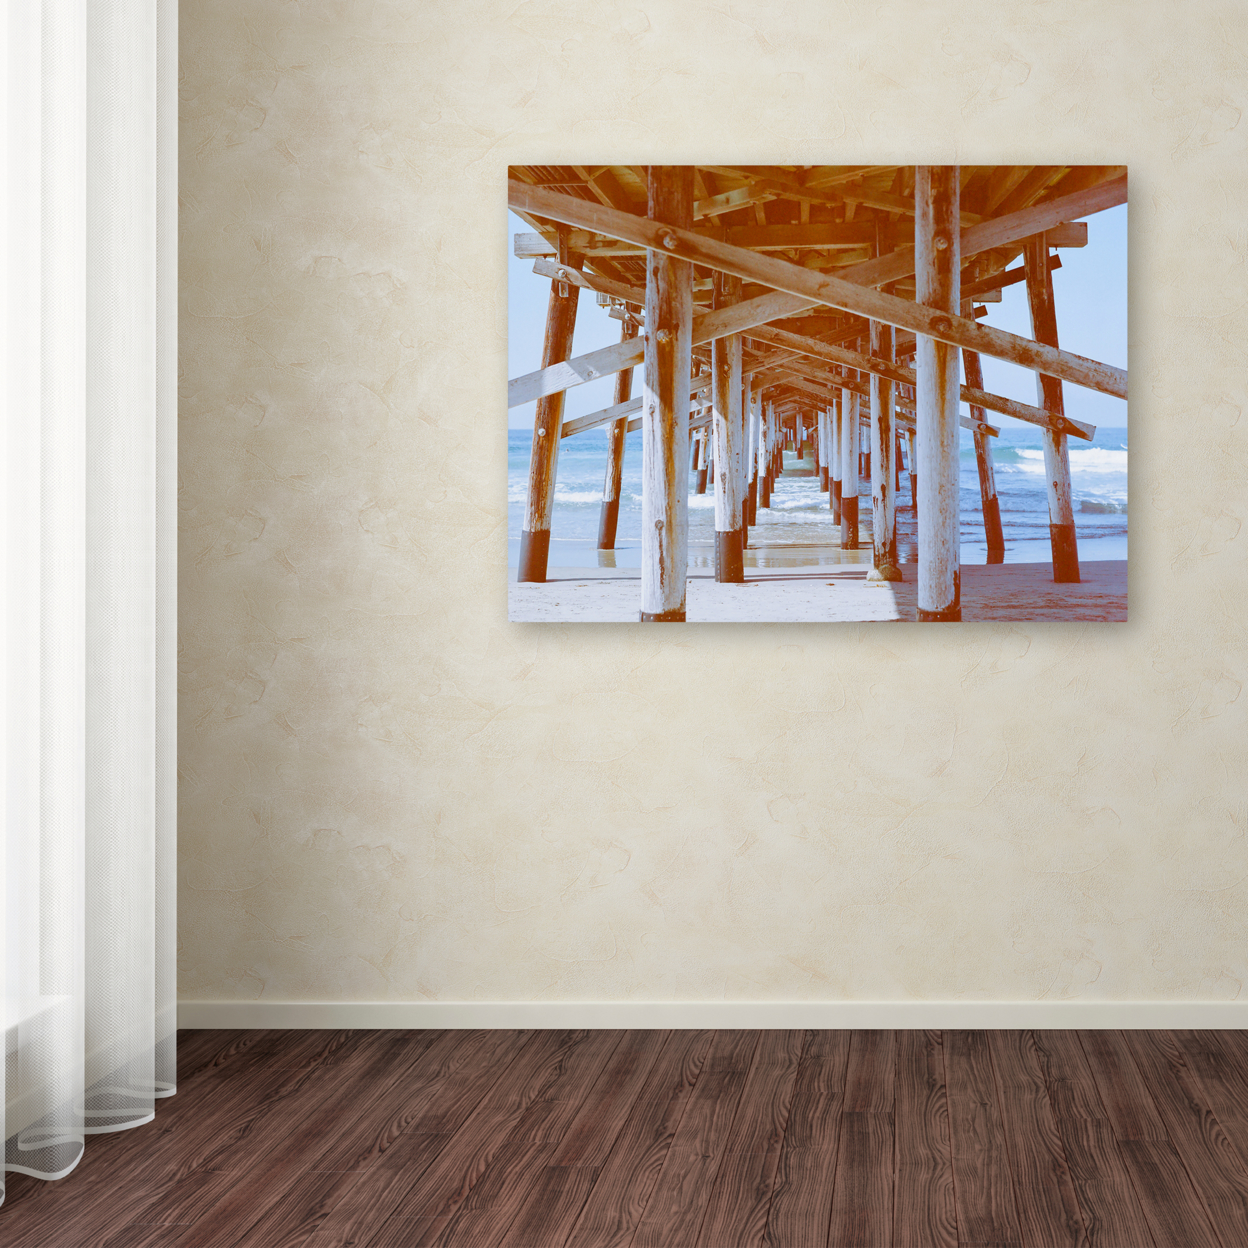 Ariane Moshayedi 'Under Pier' Canvas Wall Art 35 X 47 Inches